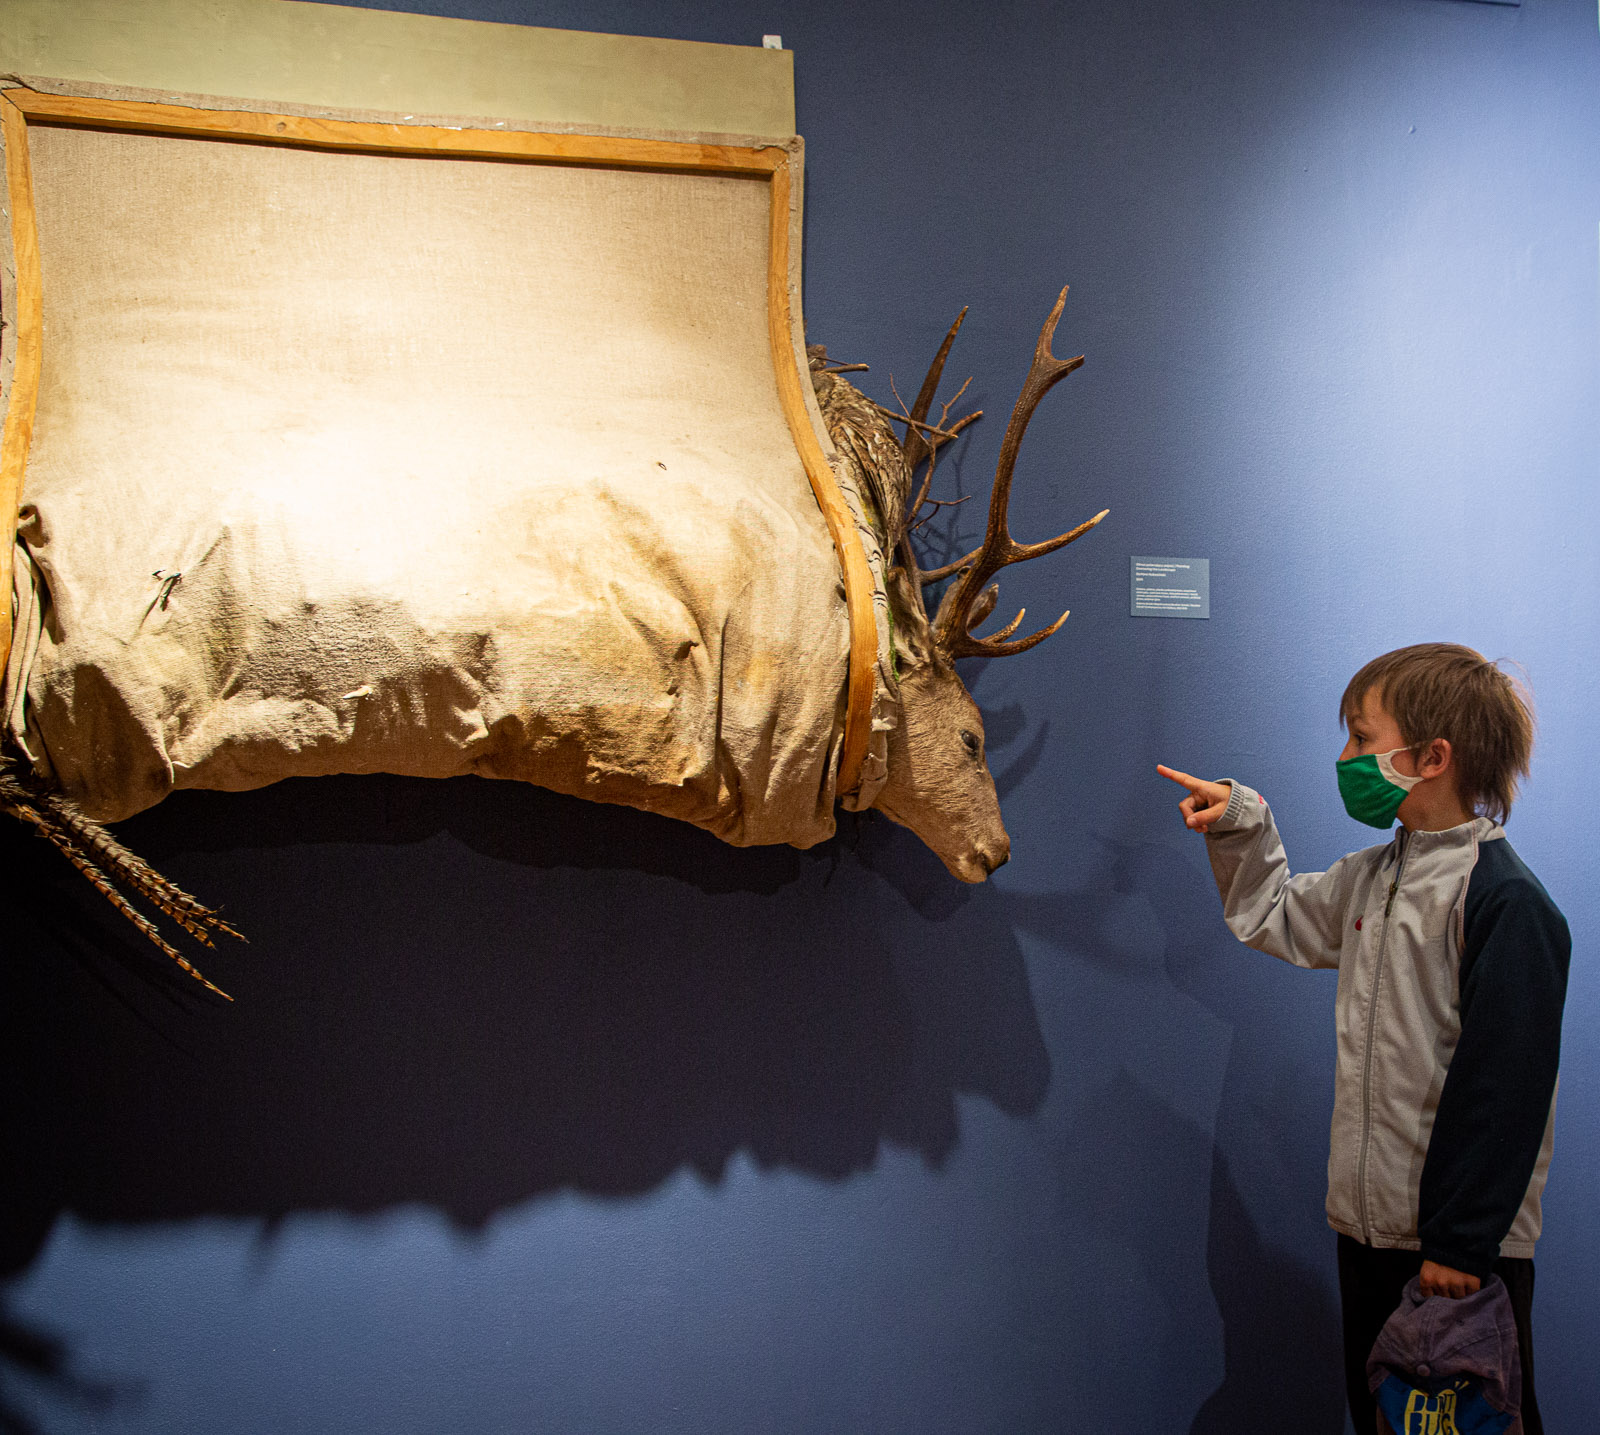 po prawek chłopiec wyciąga palec w stronę eksponatu na wystawie, po lewej eksponat głowa jelenia z porożem zawinięta w płótno wiszące na ścianie, oświetlone, wydaje się ze cały jeleń jest zawinięty w płótno